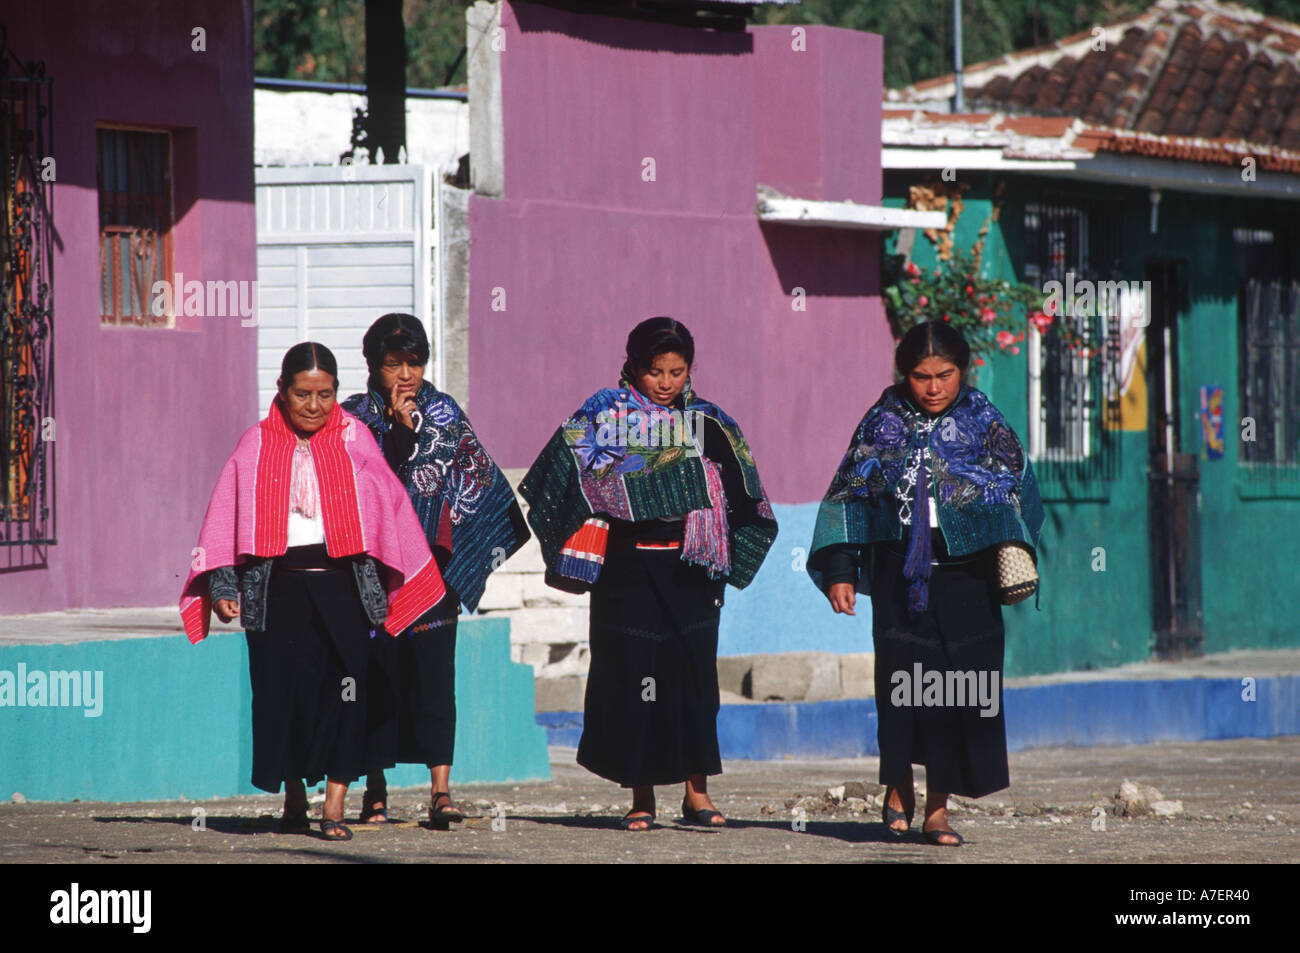 Mexico, Chiapas, Zinacantan. The Tzotzil Mayan women Stock Photo